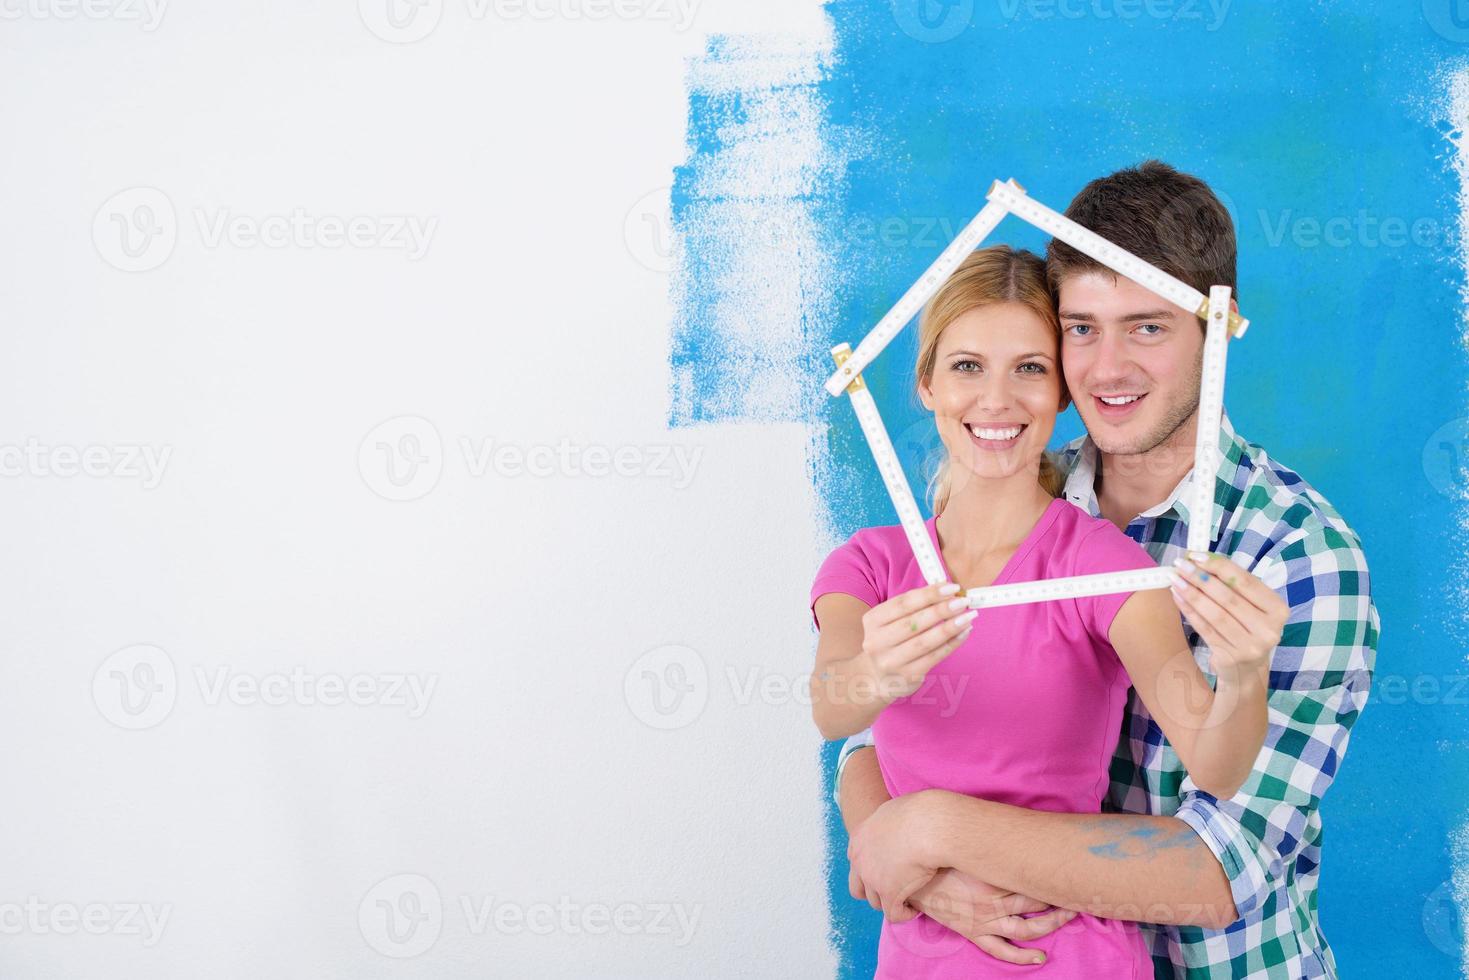 pareja feliz pintando una pared en su nuevo hogar foto